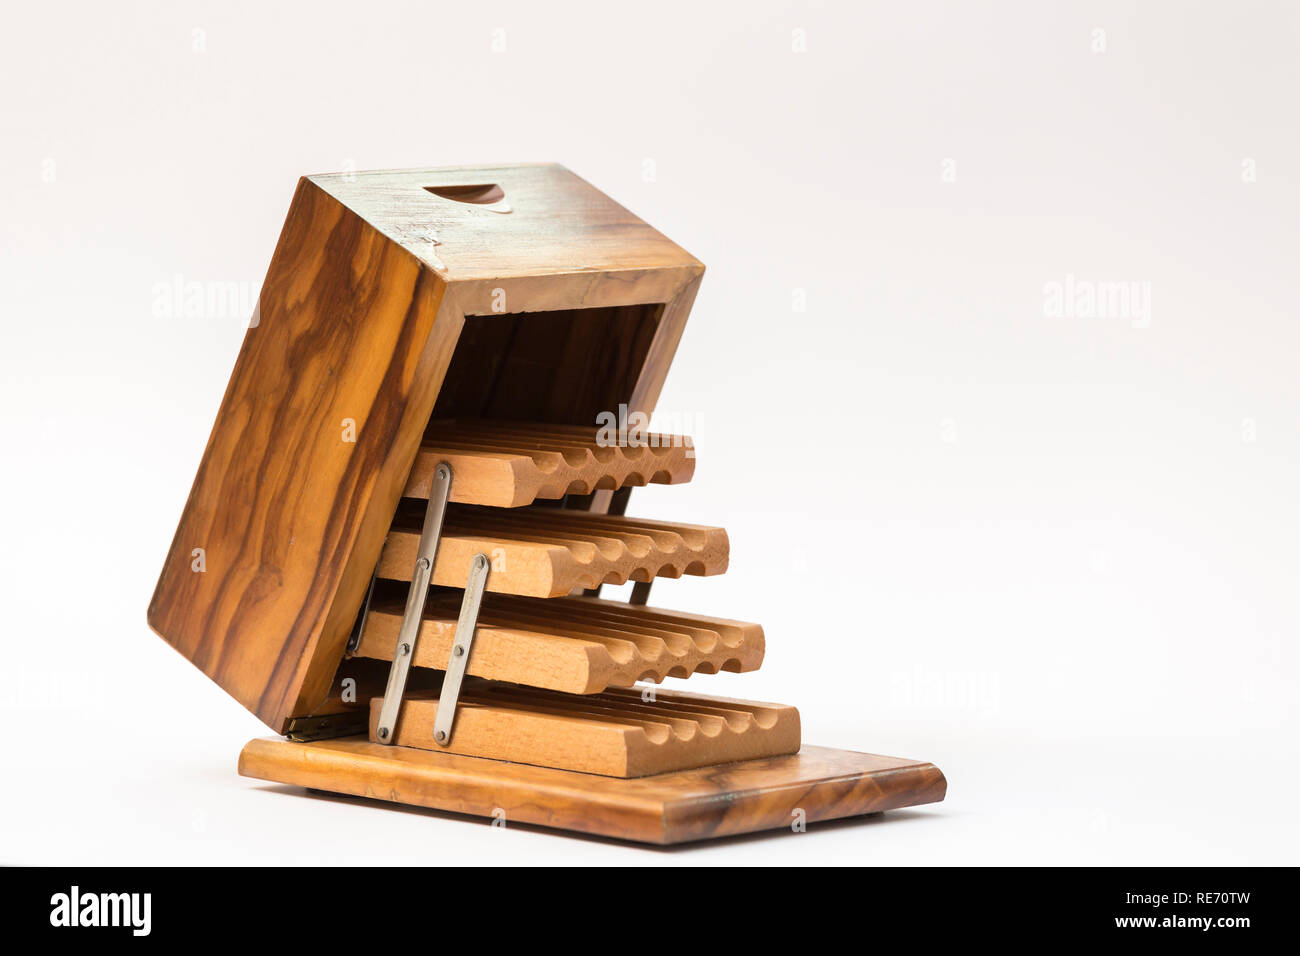 open-box wooden cigarette case to see the cigarette separators Stock Photo  - Alamy